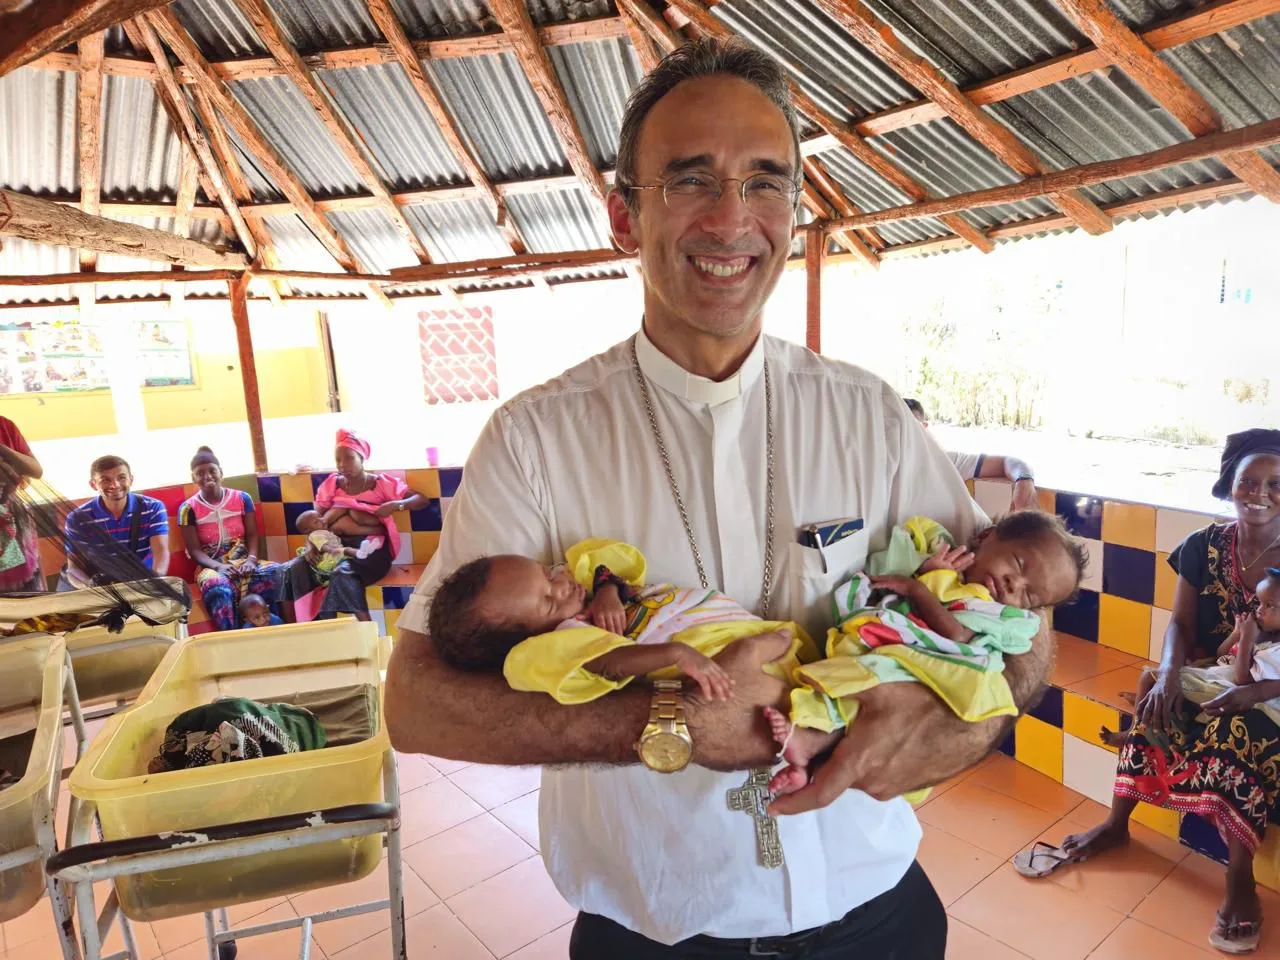 Dom Dilmo e os demais missionários planejam distribuir alimentos, medicamentos e roupas, além de oferecer apoio espiritual, emocional e educacional às comunidades locais. (Foto: Divulgação / Diocese de Anápolis)